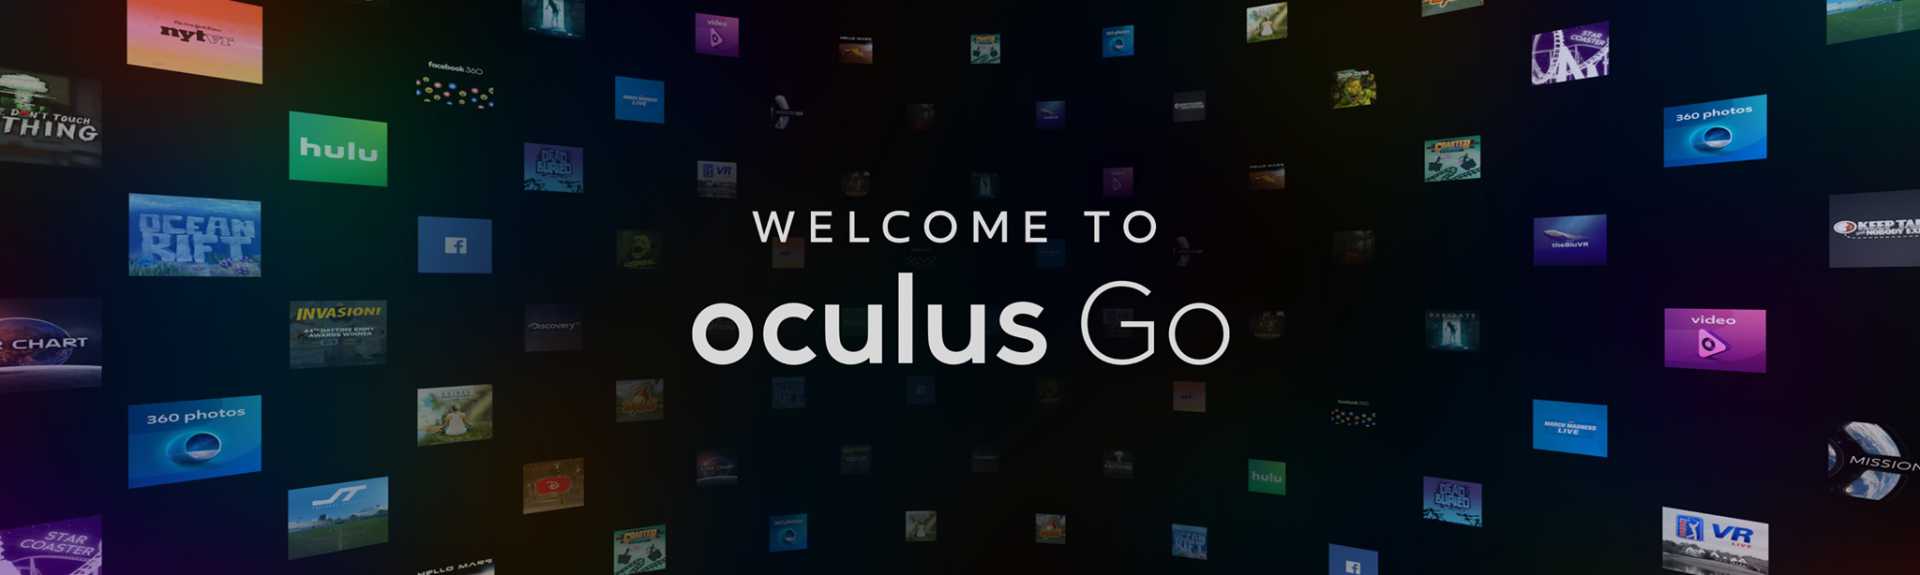 Te damos la bienvenida a Oculus Go